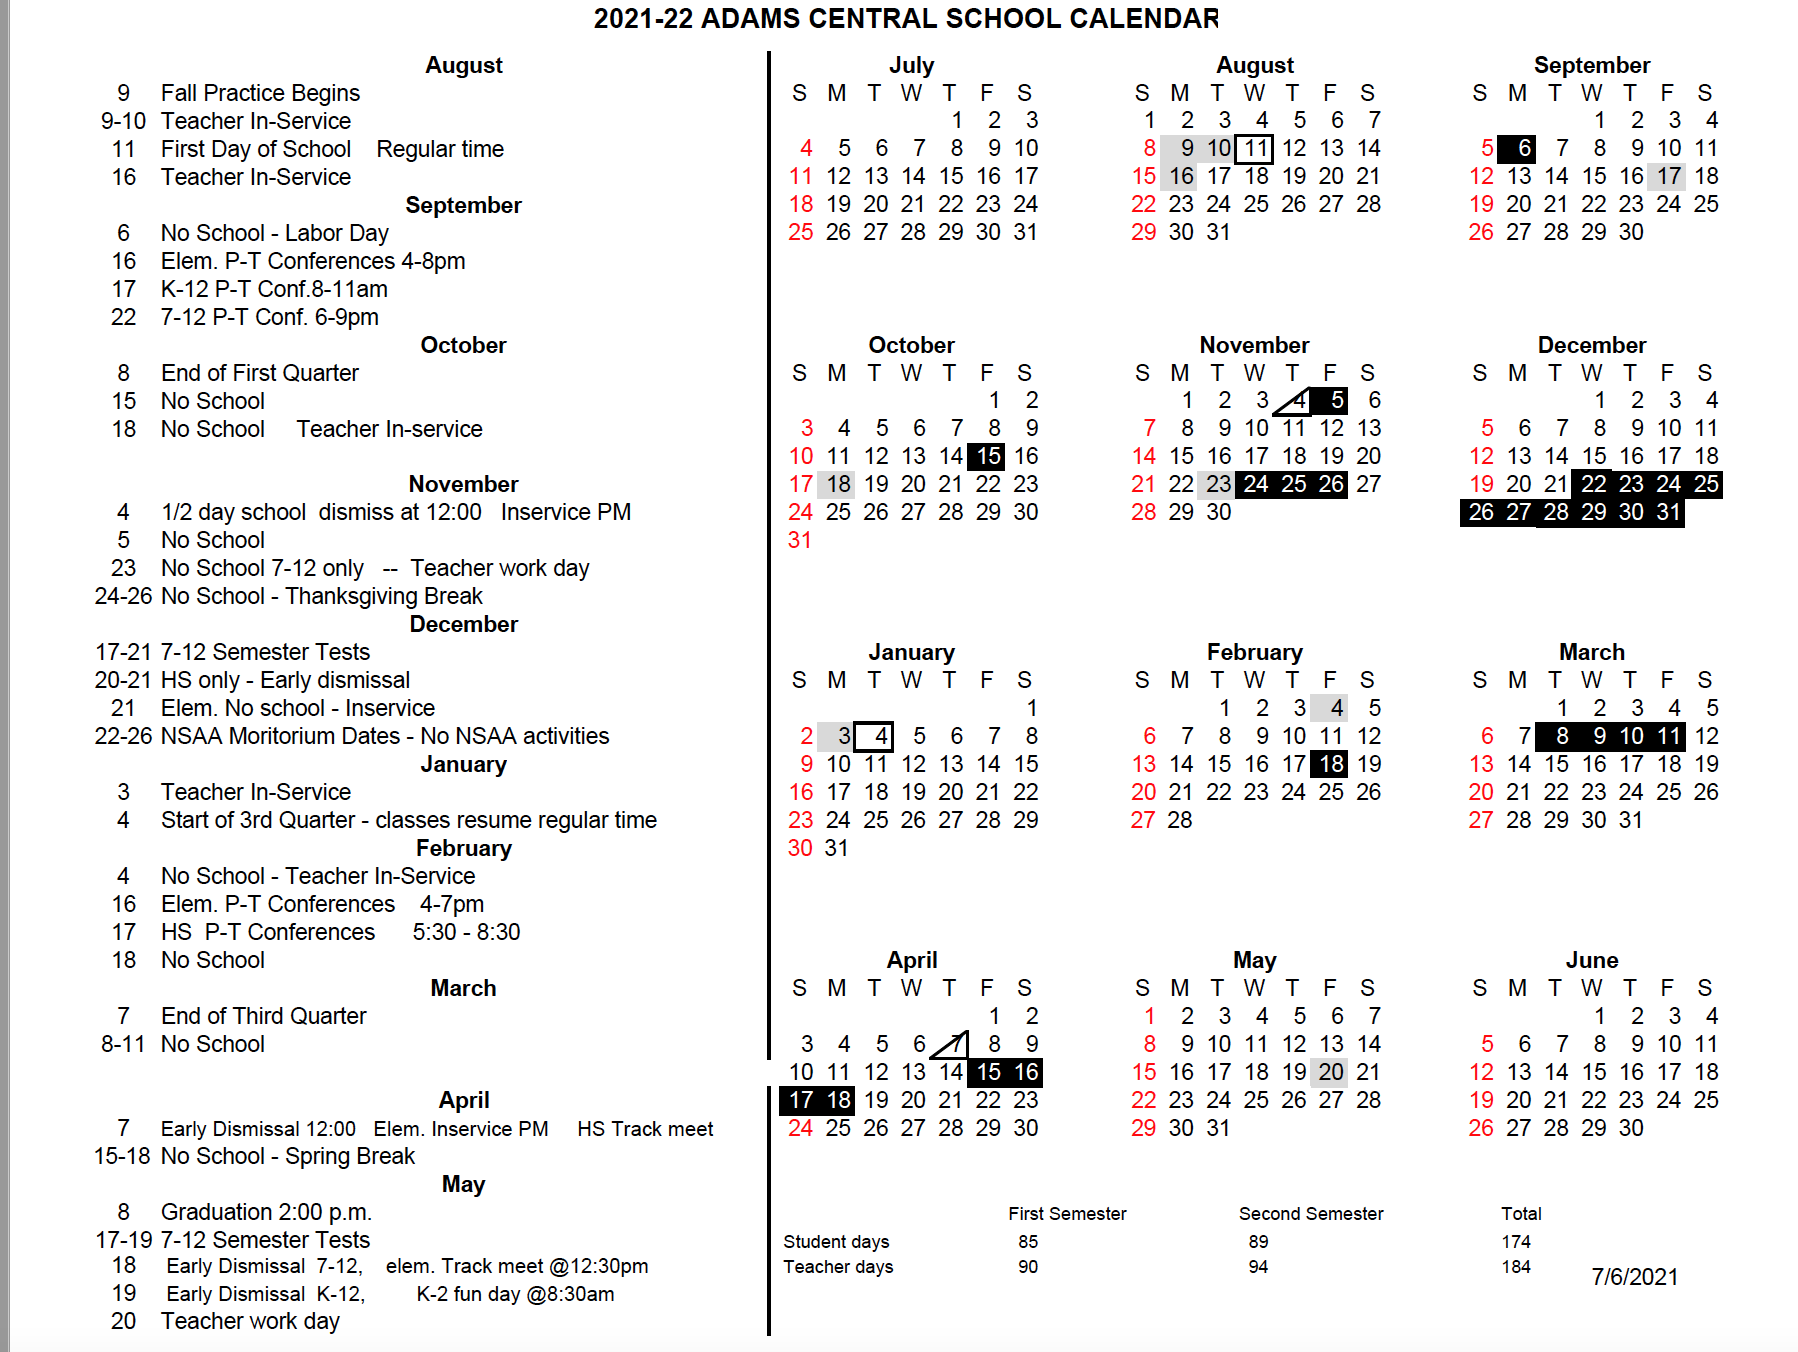 2021-22-adams-central-school-calendar-adams-central-public-schools